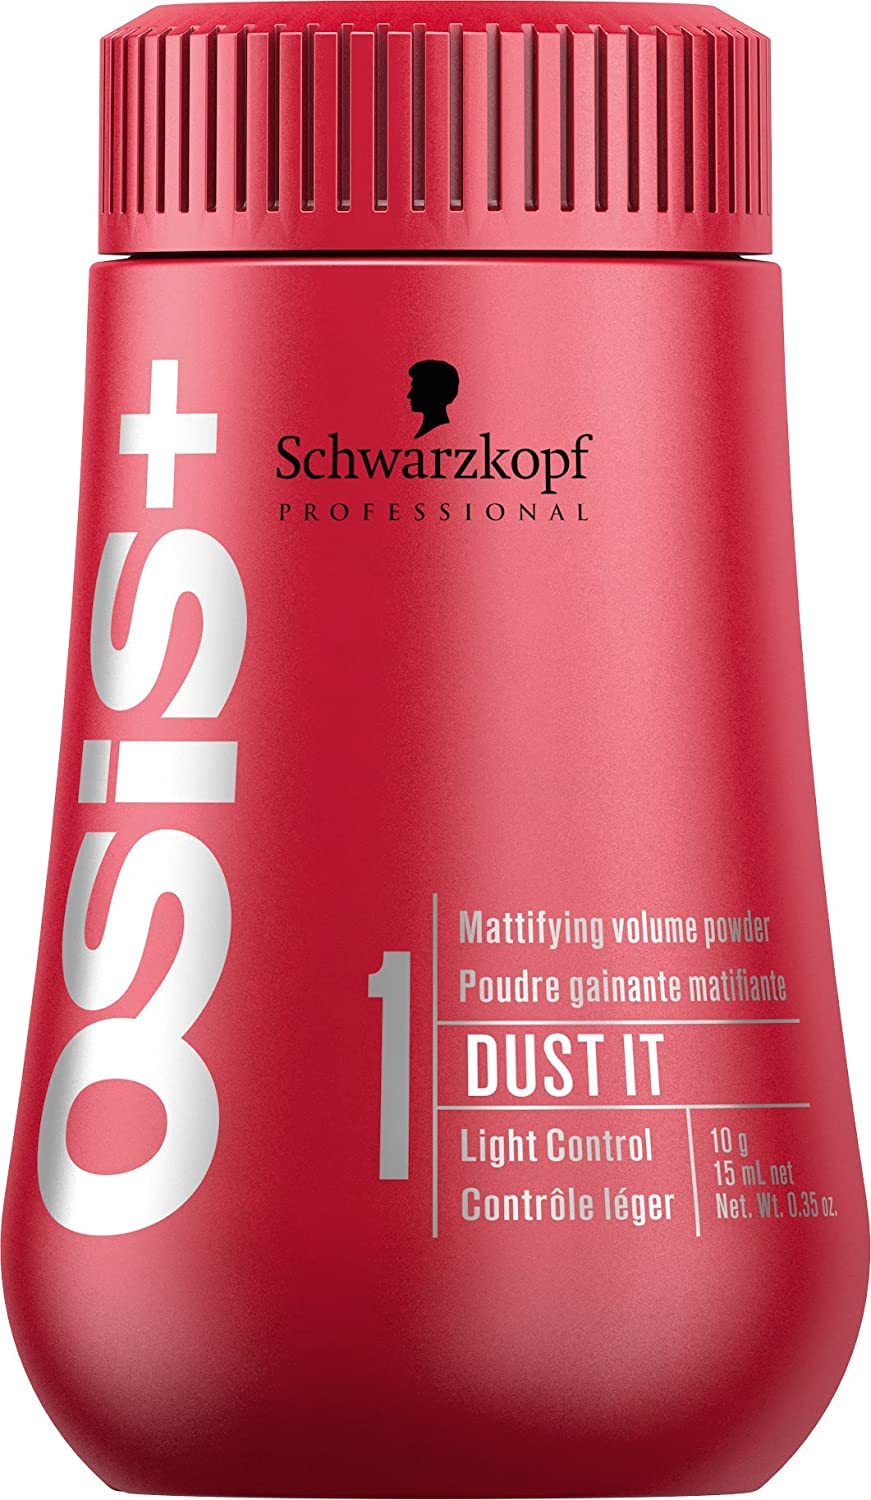 Schwarzkopf OSIS dust it 10 gr